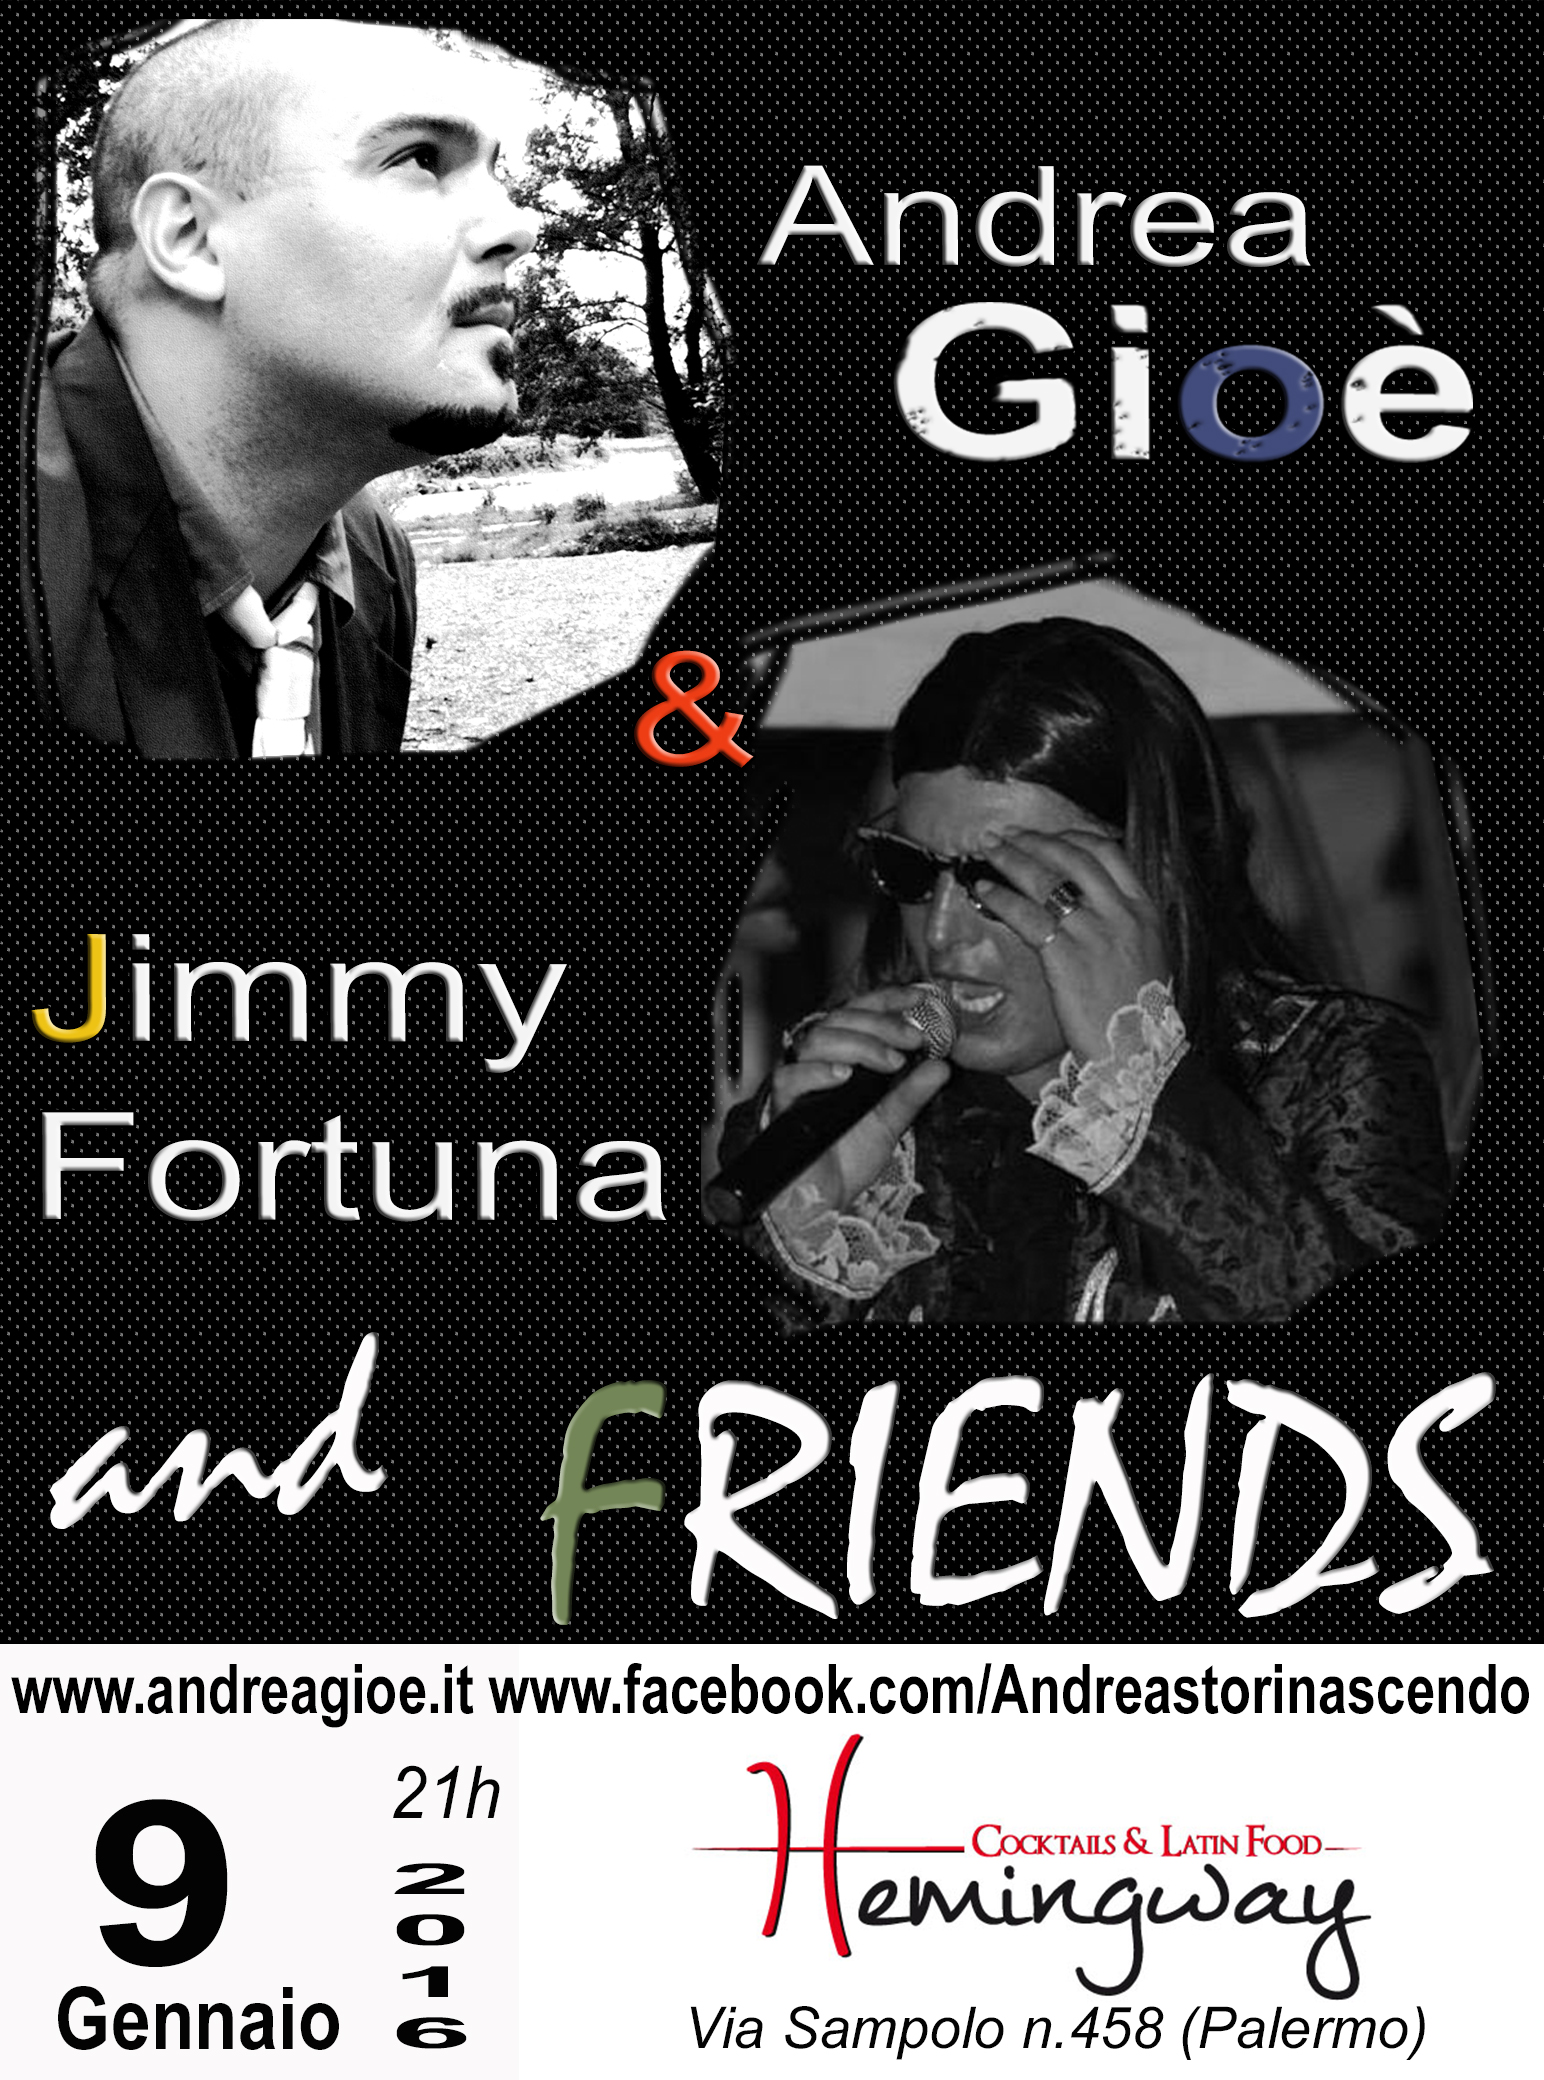 Andrea Gioè & Jimmy Fortuna